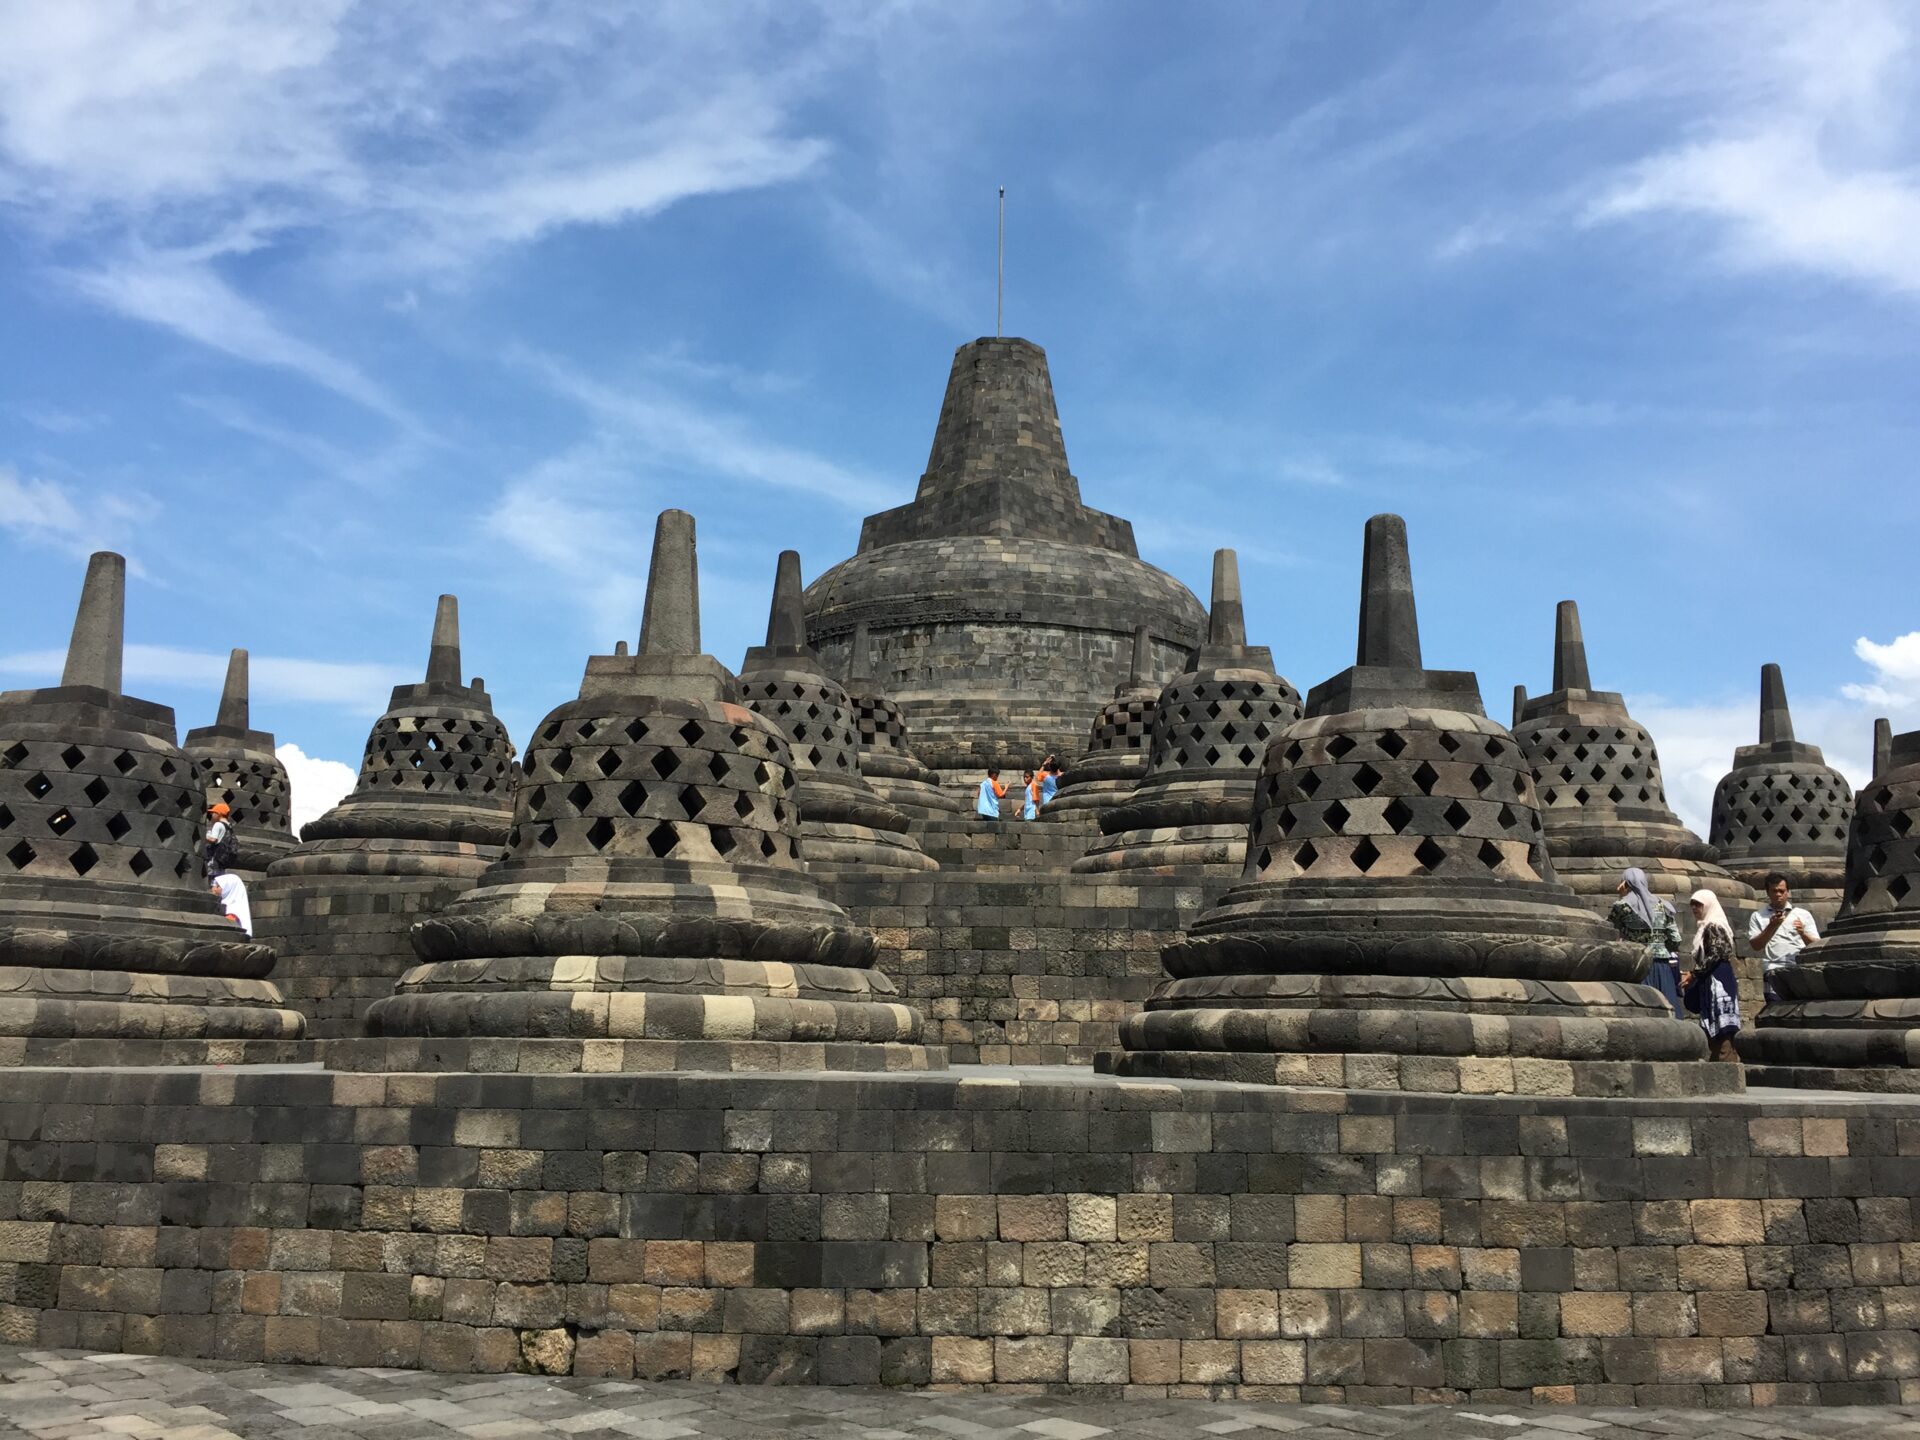 ボロブドゥール寺院遺跡群 – 一般社団法人日本旅行作家協会